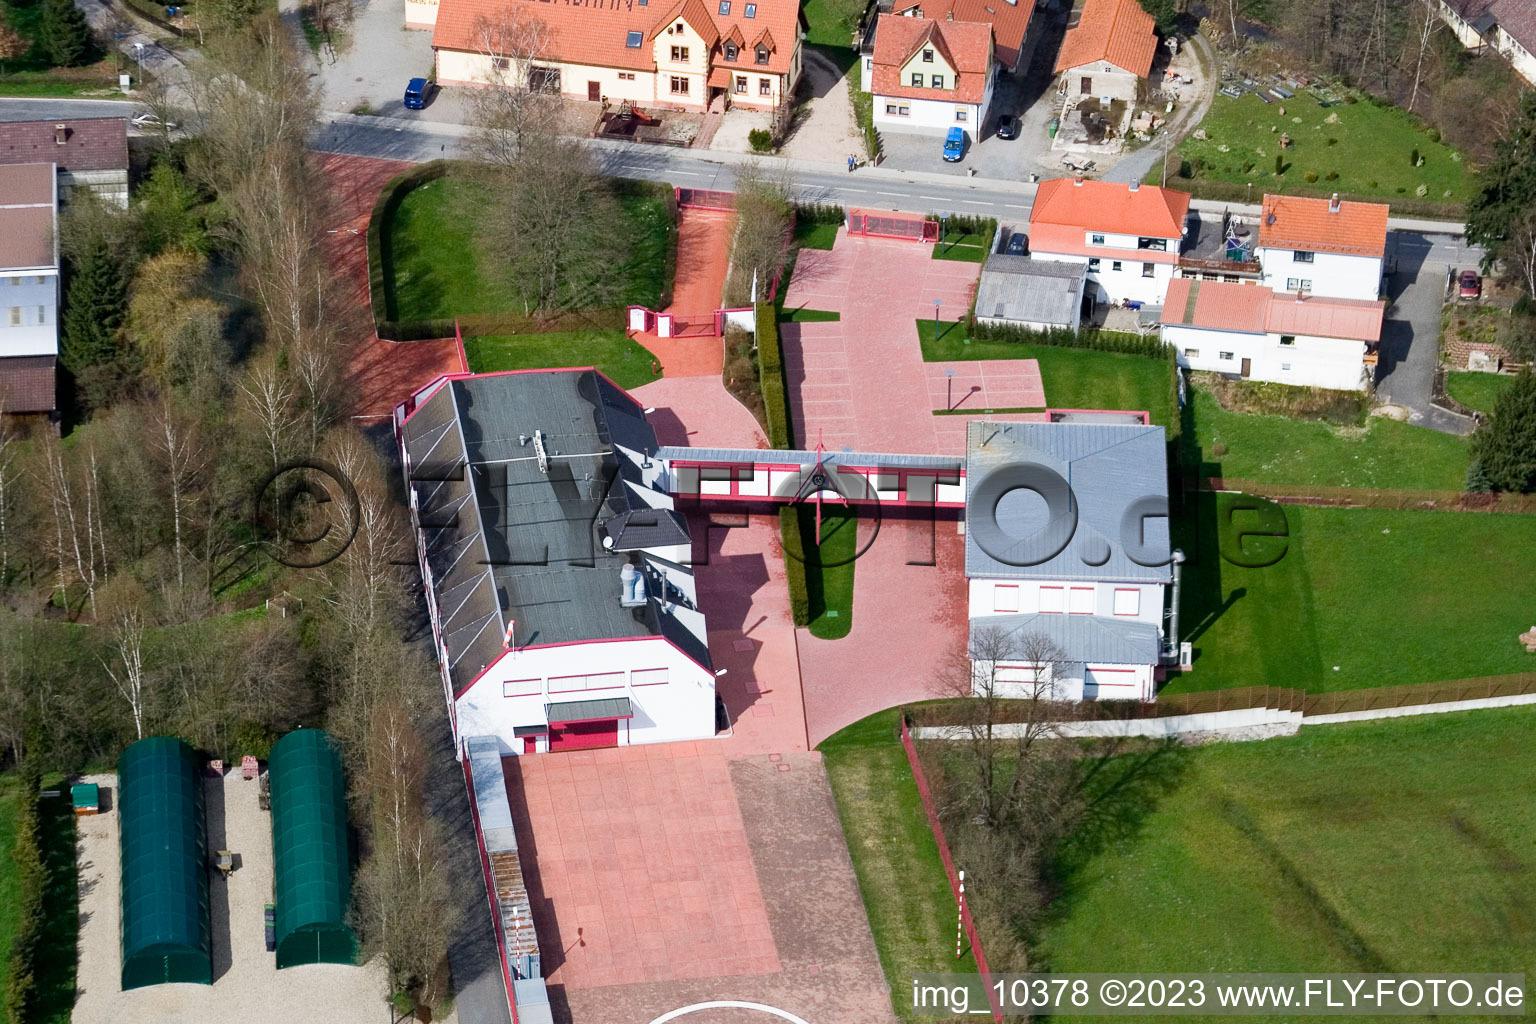 Affolterbach im Bundesland Hessen, Deutschland aus der Drohnenperspektive